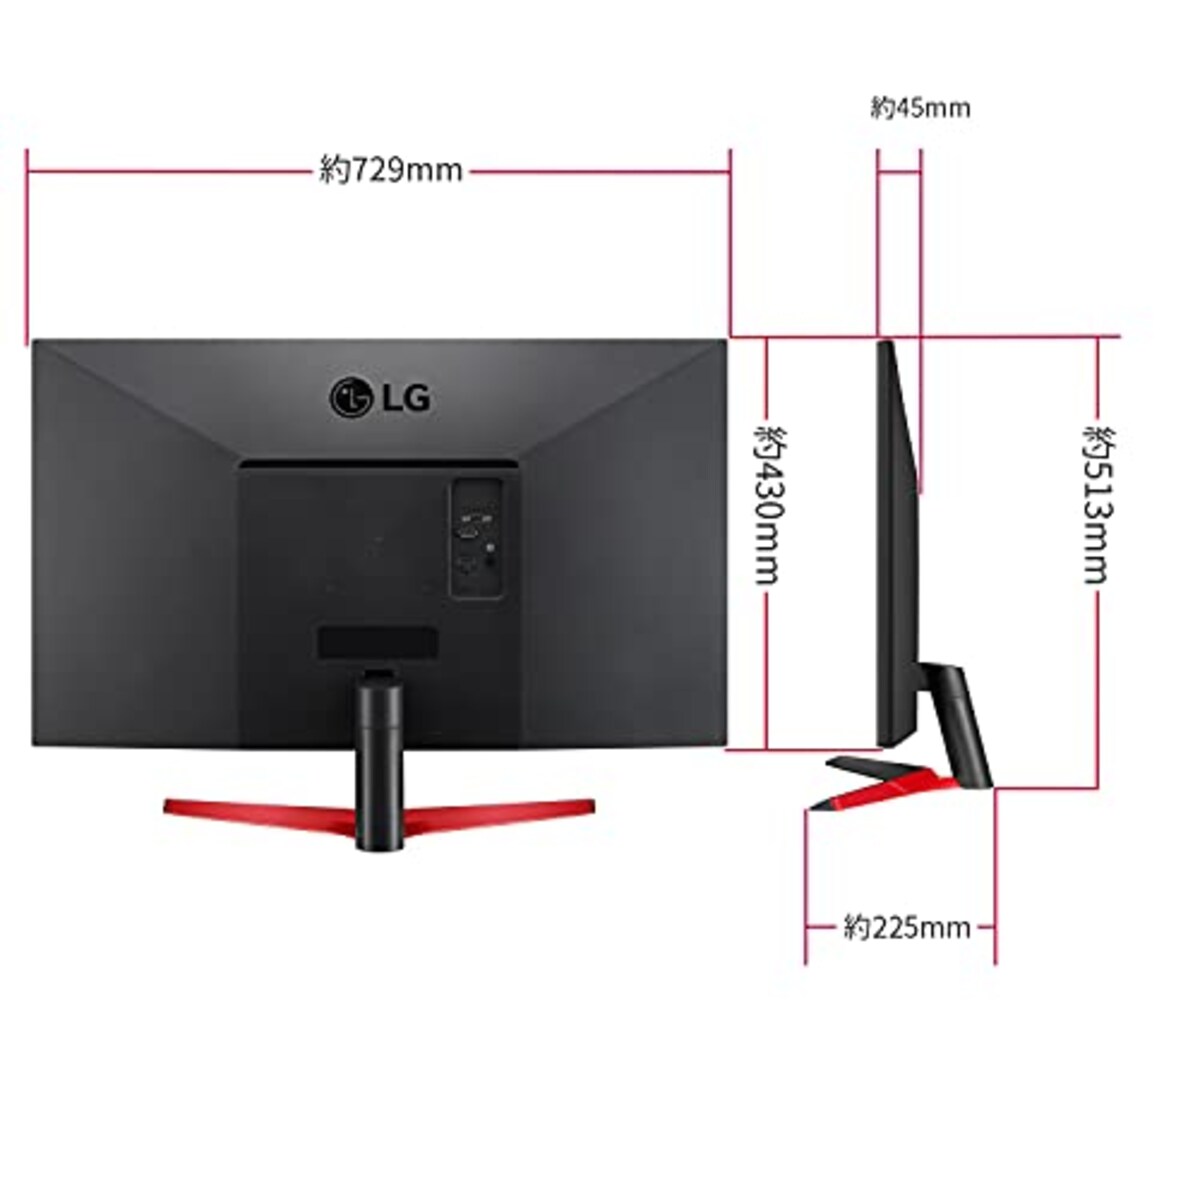  LG フレームレス モニター ディスプレイ 32MP60G-B 31.5インチ/フルHD/IPS/HDMI,DP,D-Sub/FreeSync/75Hz/1ms(MBR)/フリッカーセーフ、ブルーライト低減機能//3年安心・無輝点保証画像7 